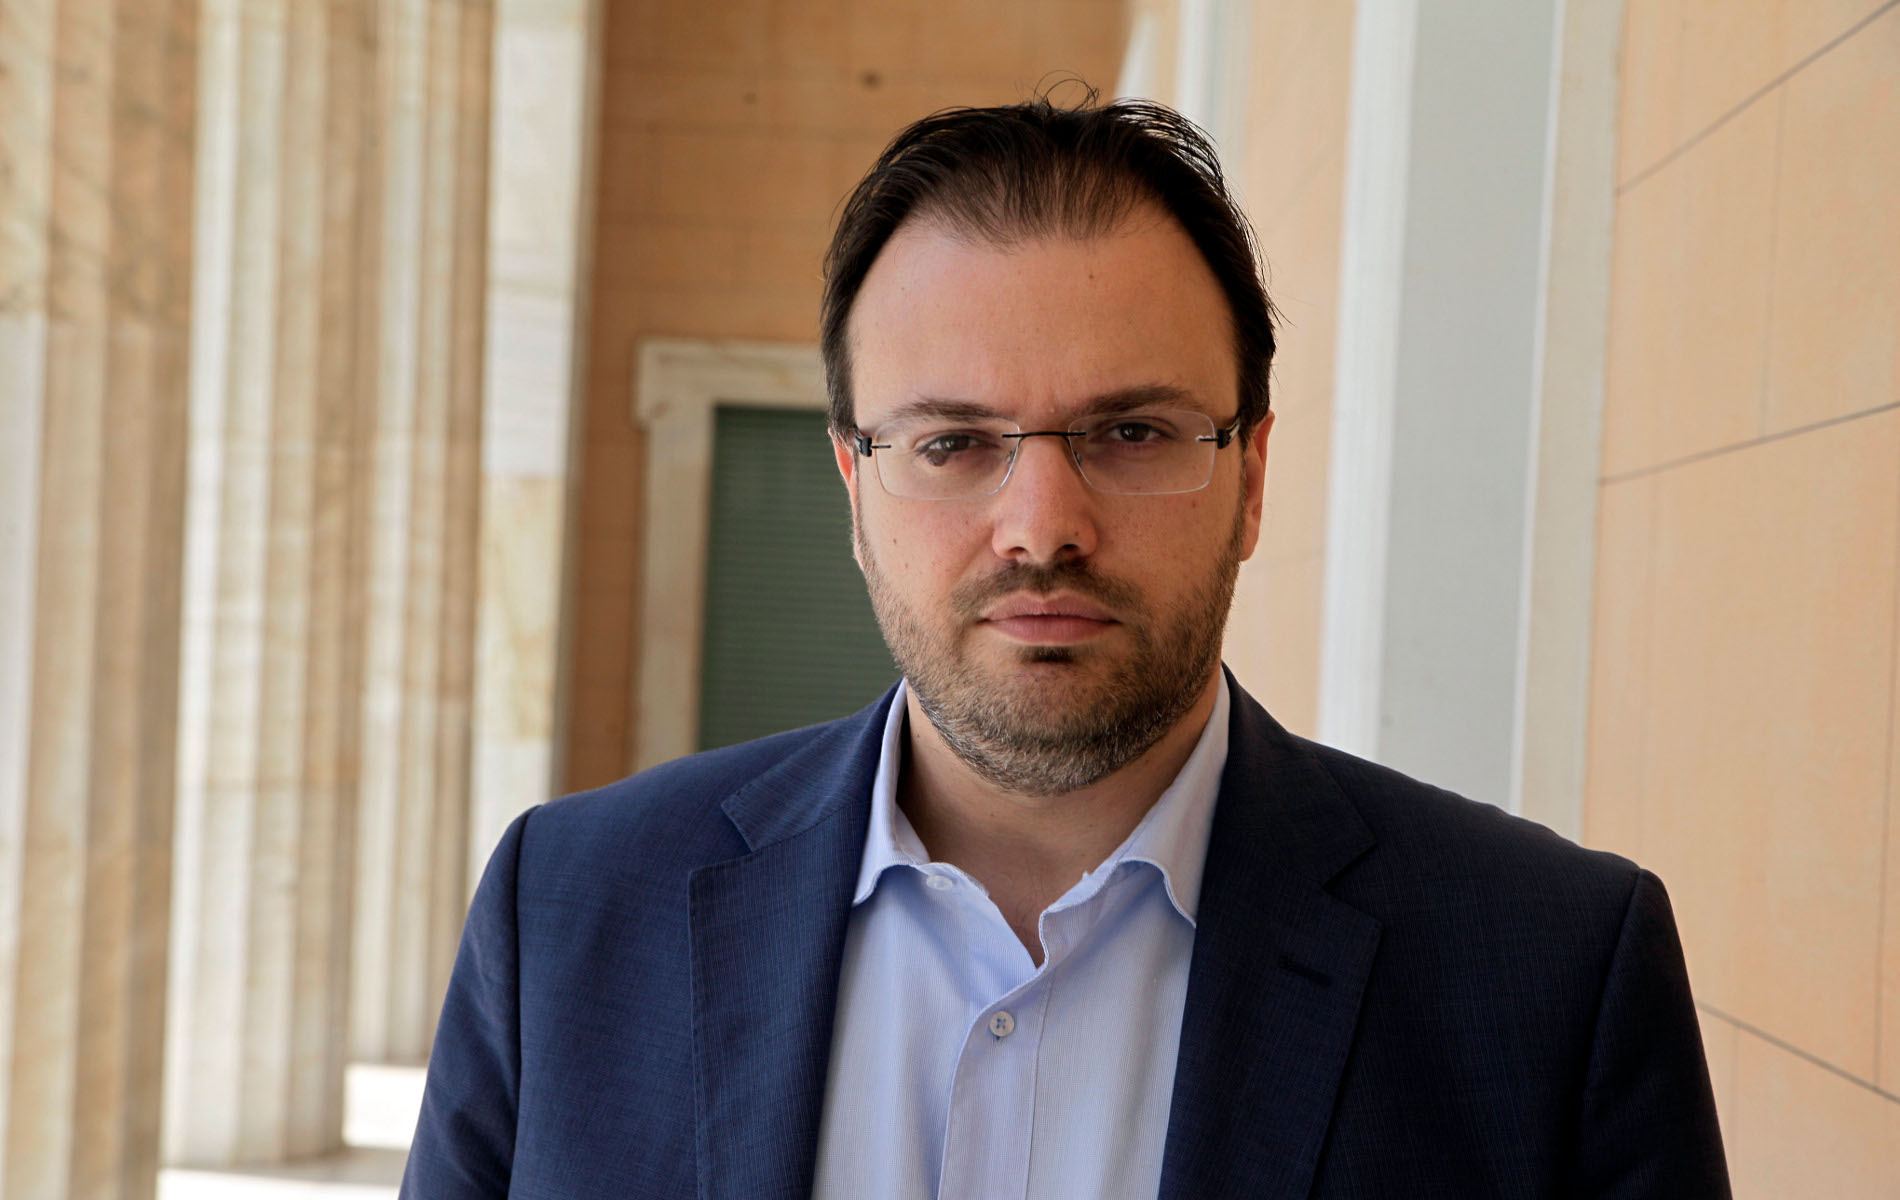 Θ.Θεοχαρόπουλος: Η αξιωματική αντιπολίτευση εκμεταλλεύεται καταστάσεις